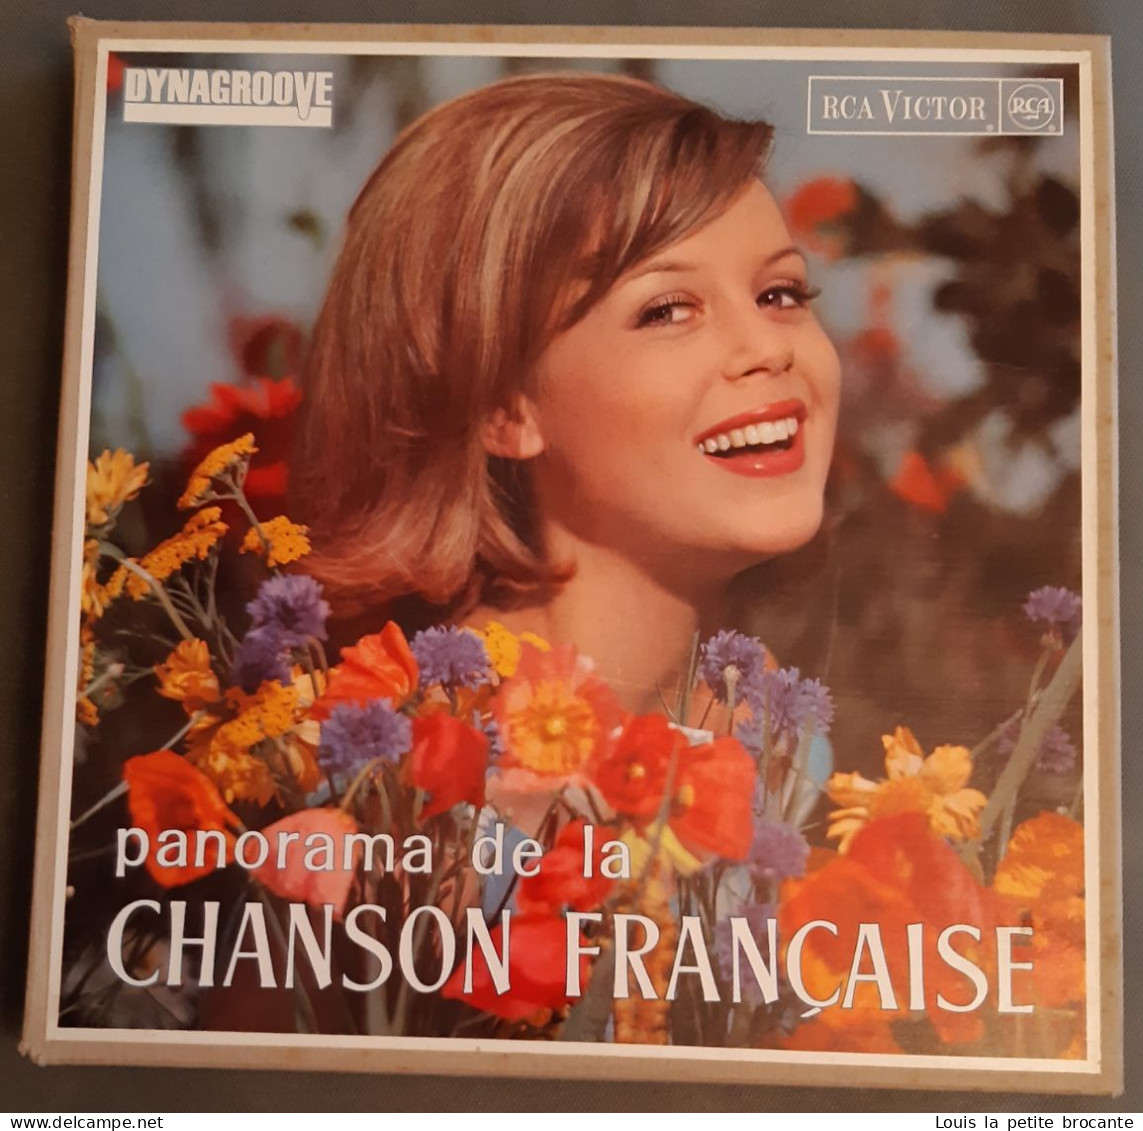 Coffret De 10 Disques Vinyles, PANORAMA DE LA CHANSON FRANCAISE - DINAGROOVE - RCA VICTOR 1964, 1 Chanson Rayée - Vollständige Sammlungen